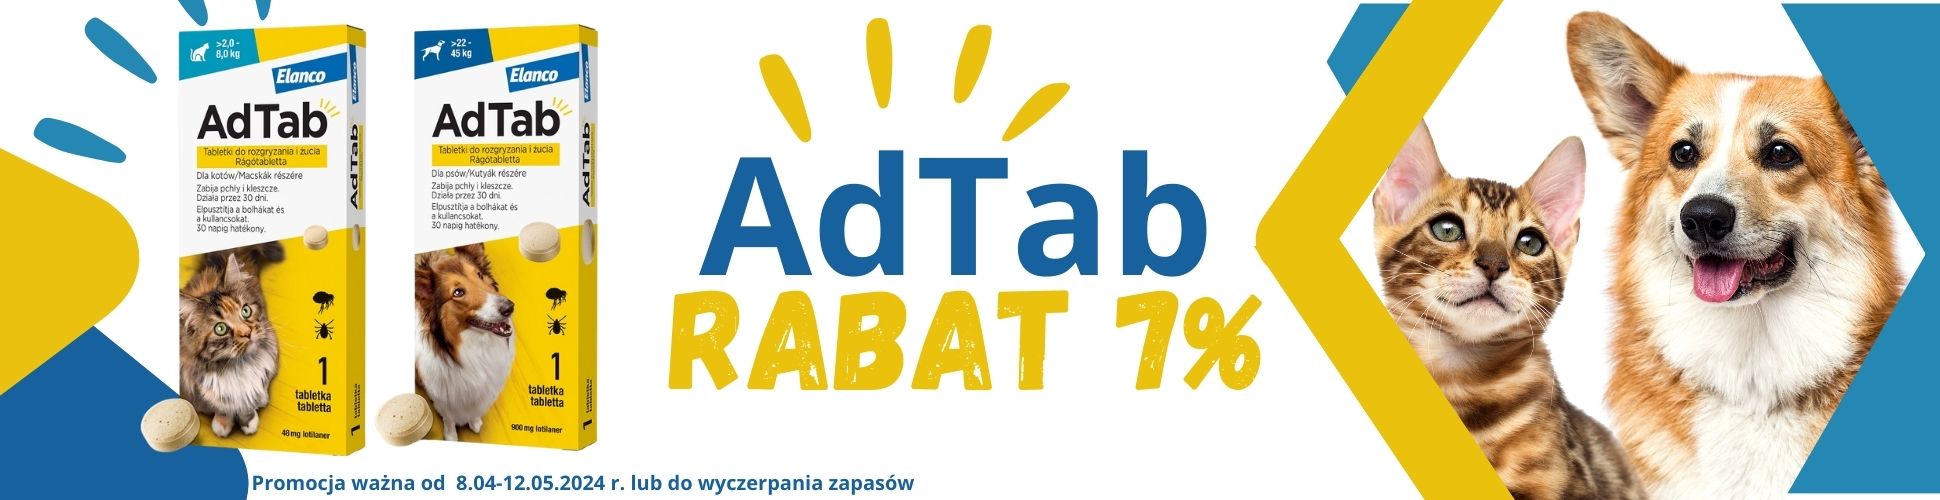 AdTab promocja